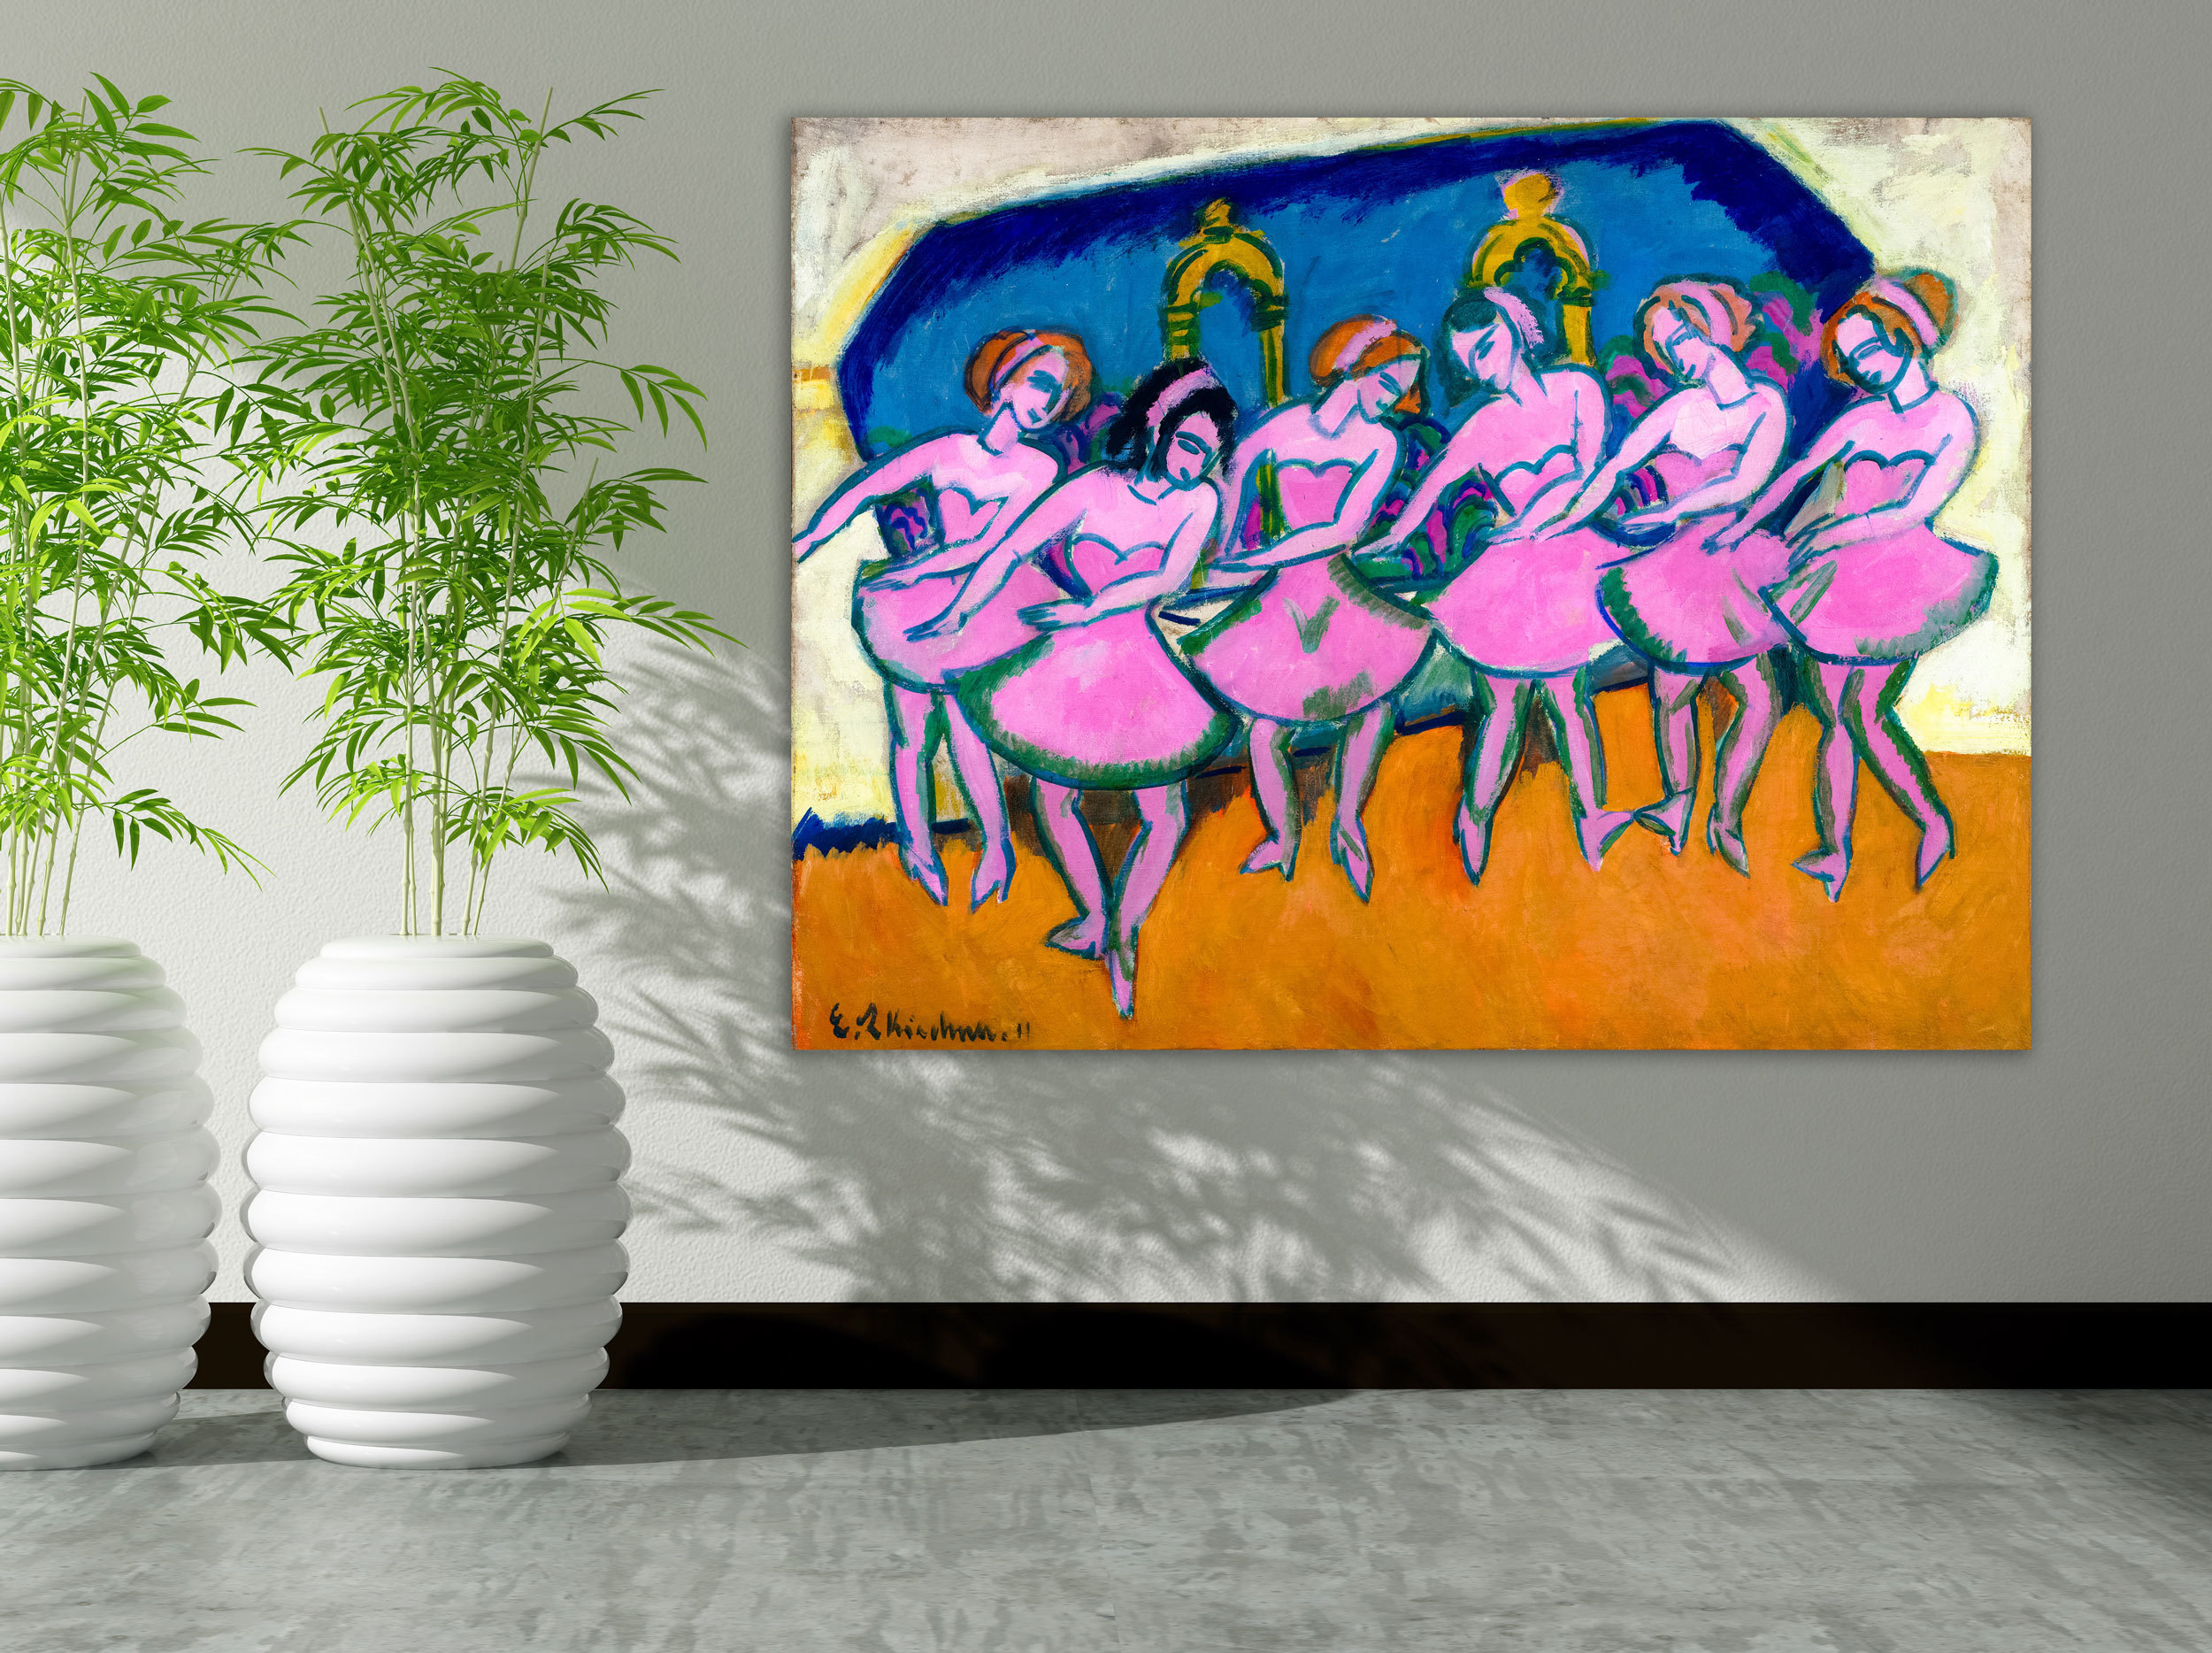 Ernst Ludwig Kirchner - Six Dancers, 1911